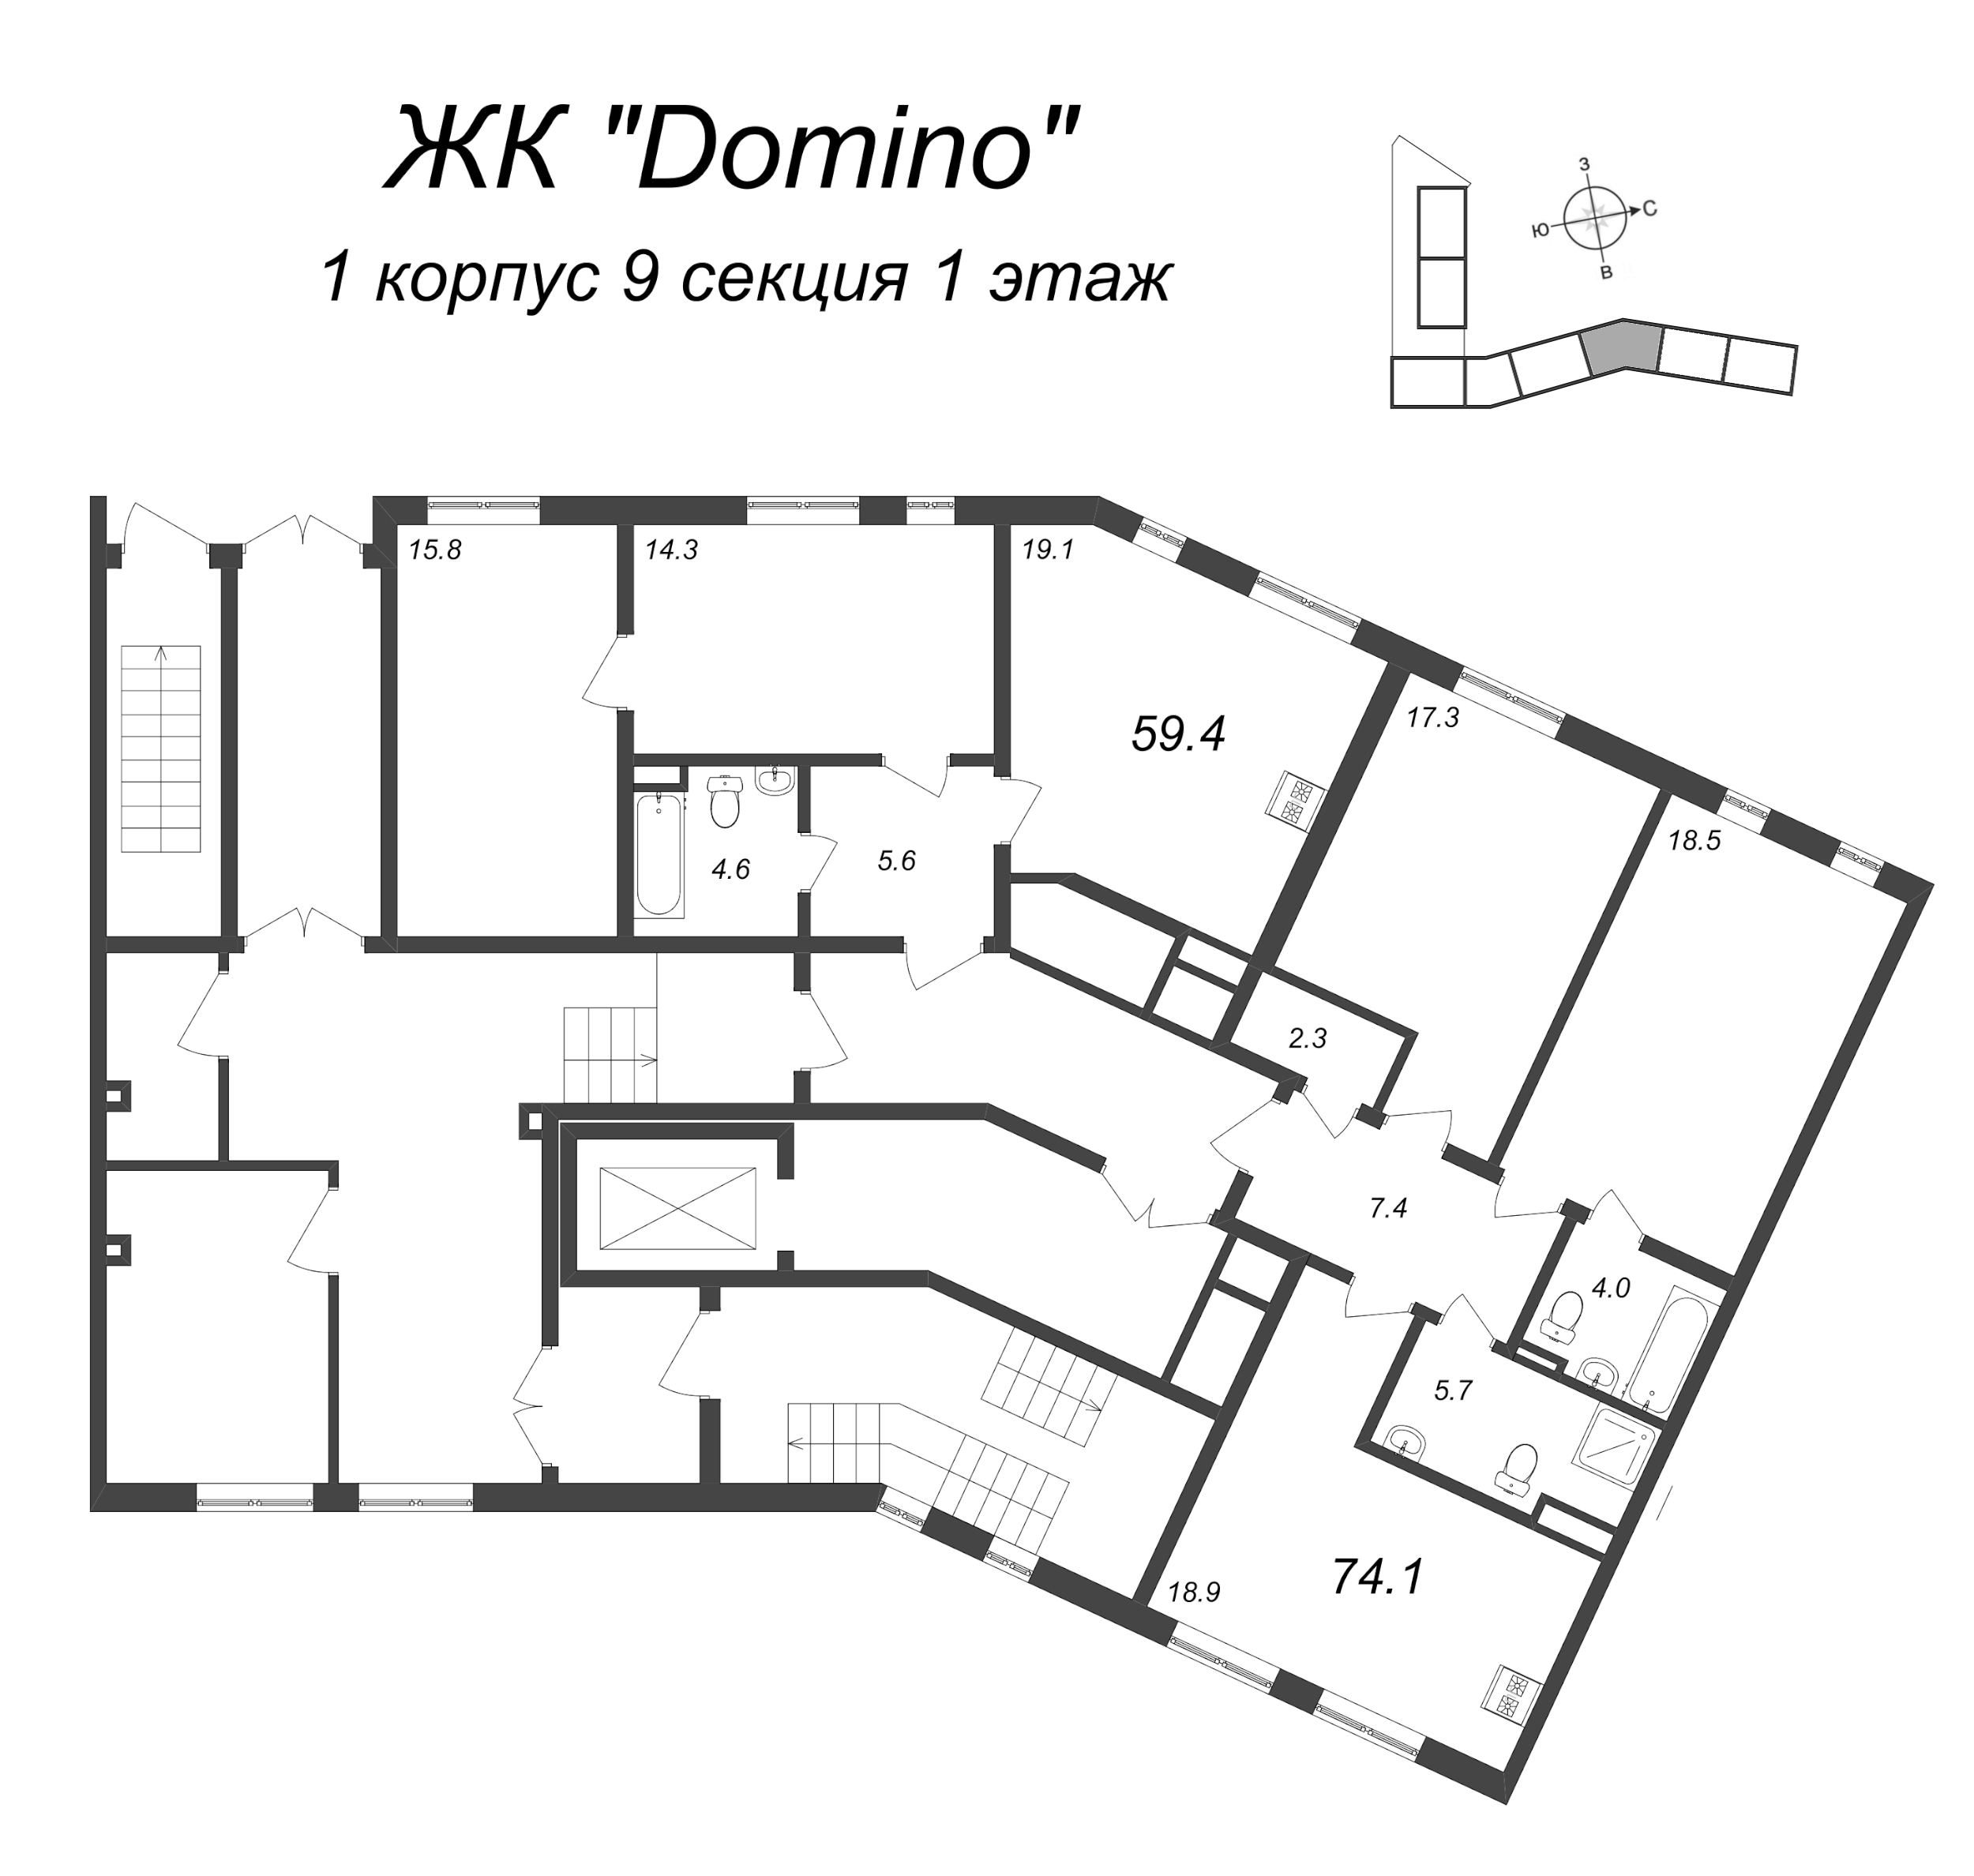 2-комнатная квартира, 59.4 м² в ЖК "Domino Premium" - планировка этажа